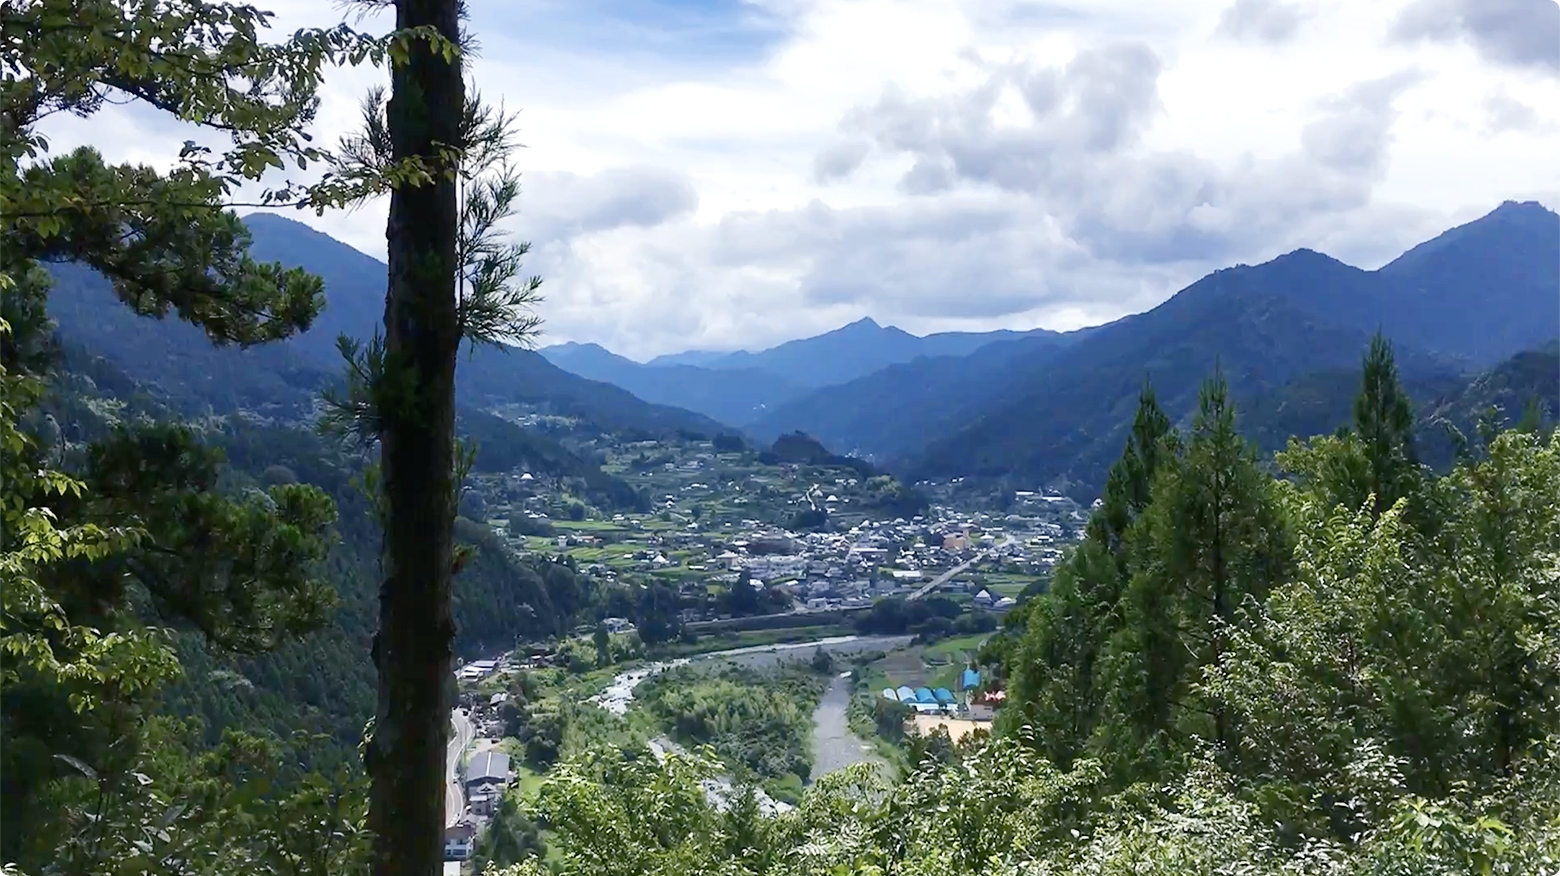 人口約5000人の山間部にある、自然豊かな町、徳島県神山町。IT企業のサテライトオフィスの進出が相次ぎ、多くの若者も移り住み、国内外からの視察、取材などが多くあり、地方創生のモデルケースになっている町でもあります。